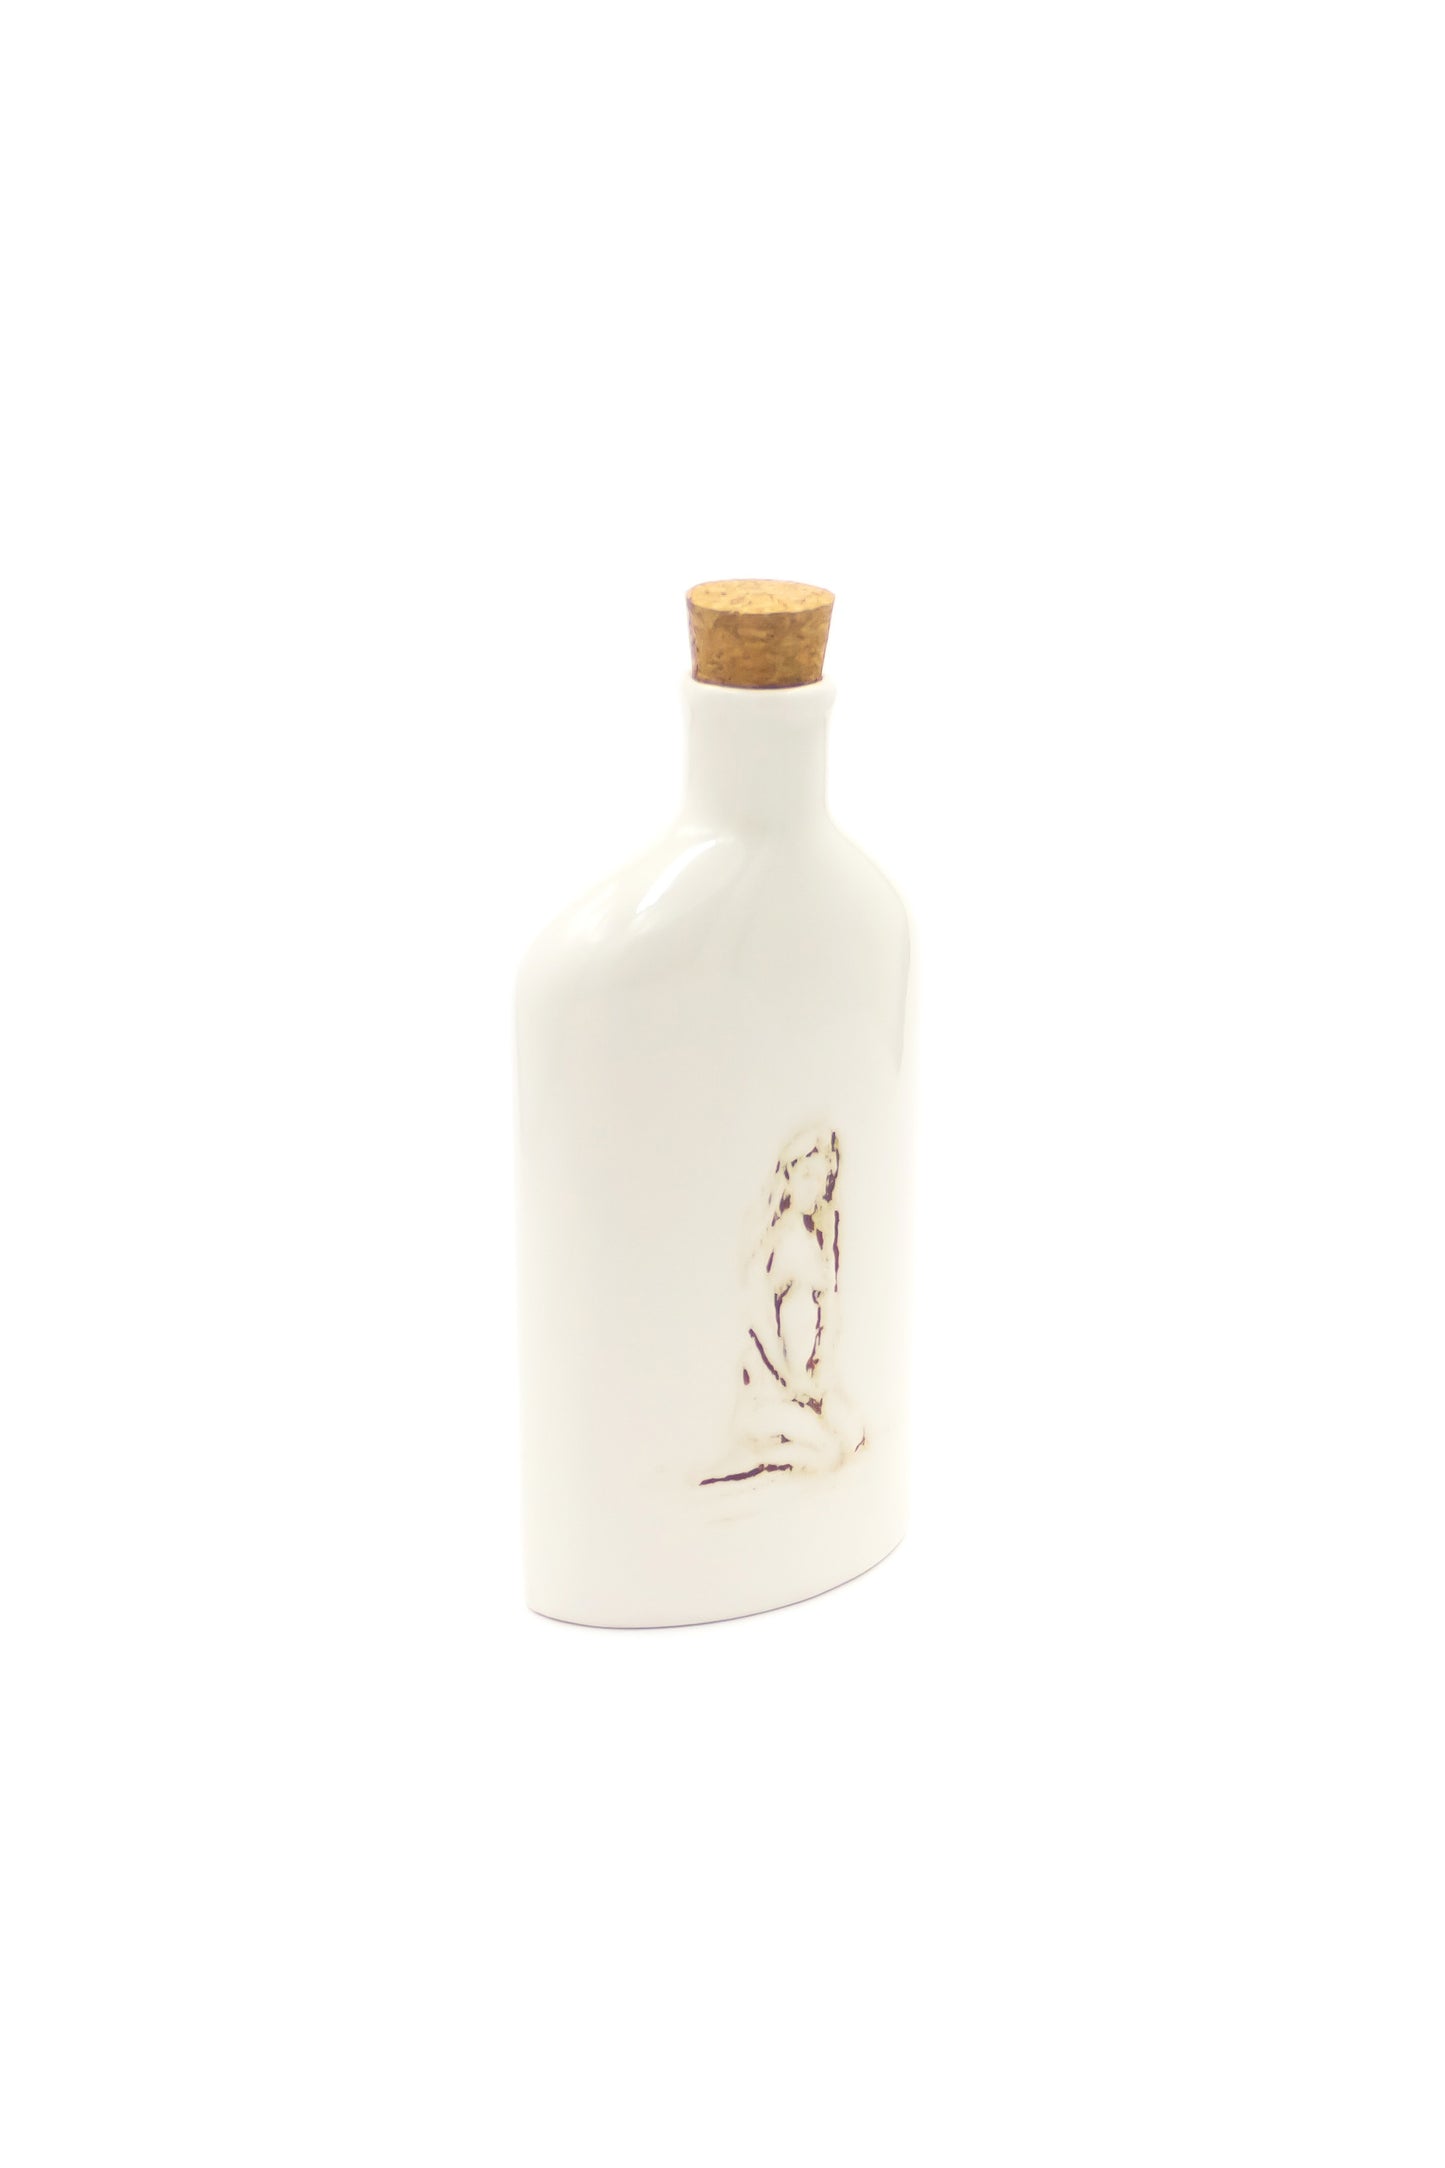 Butelka porcelanowa w kolorze białym z rysunkiem